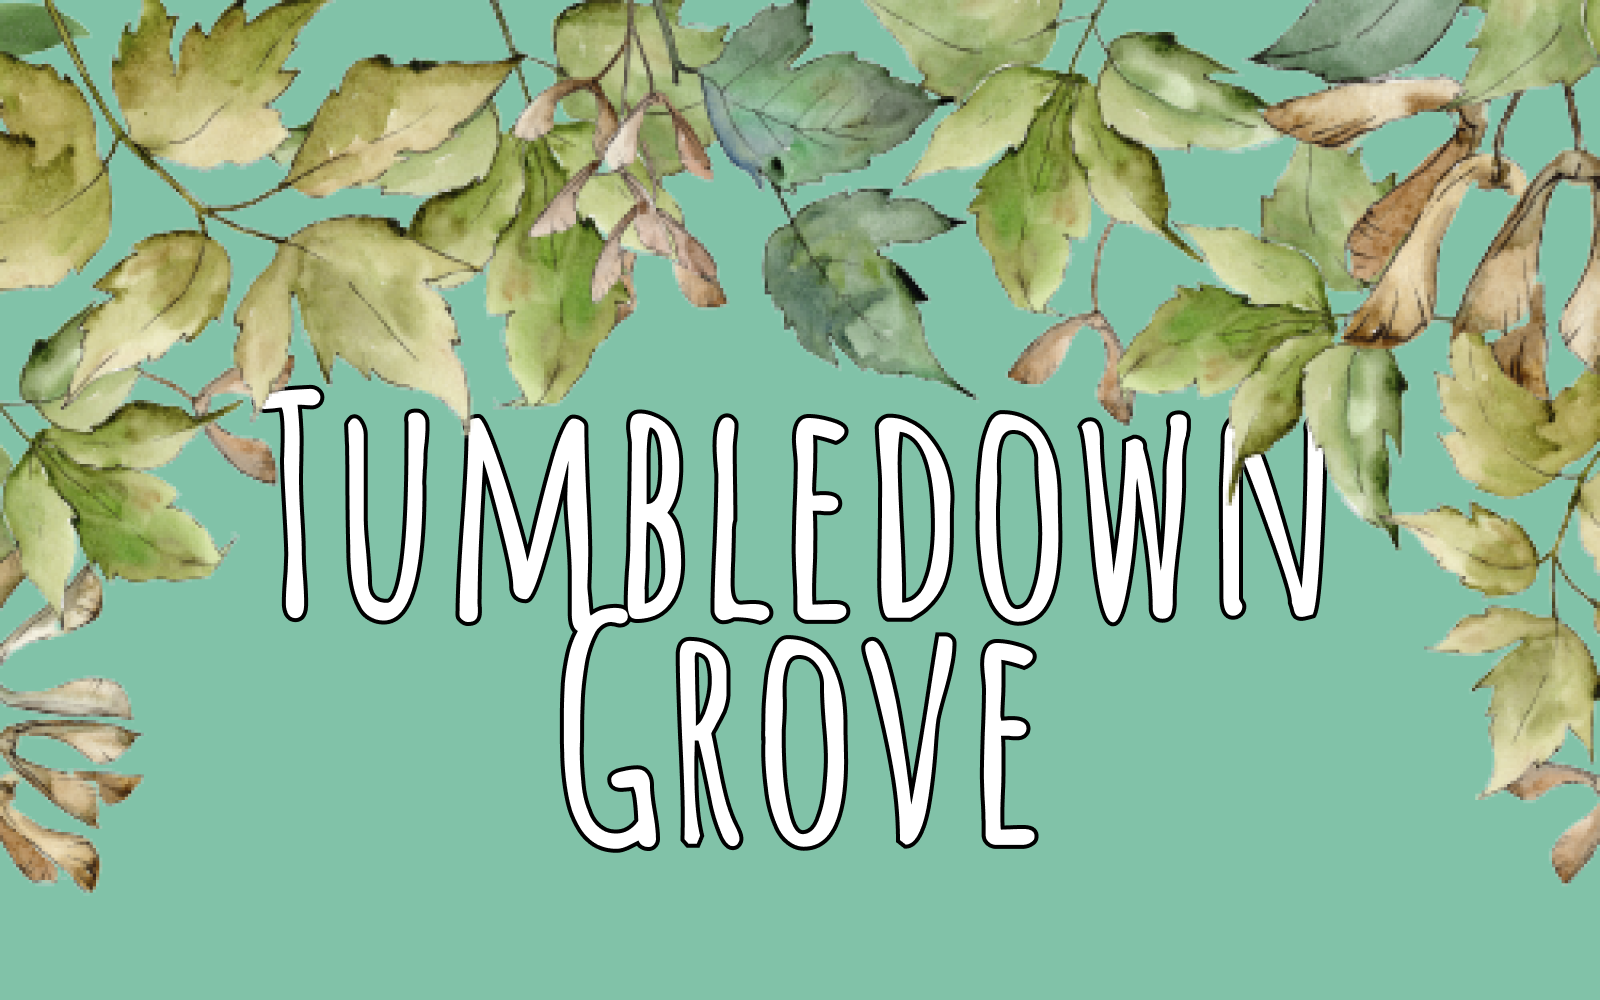 Tumbledown Grove